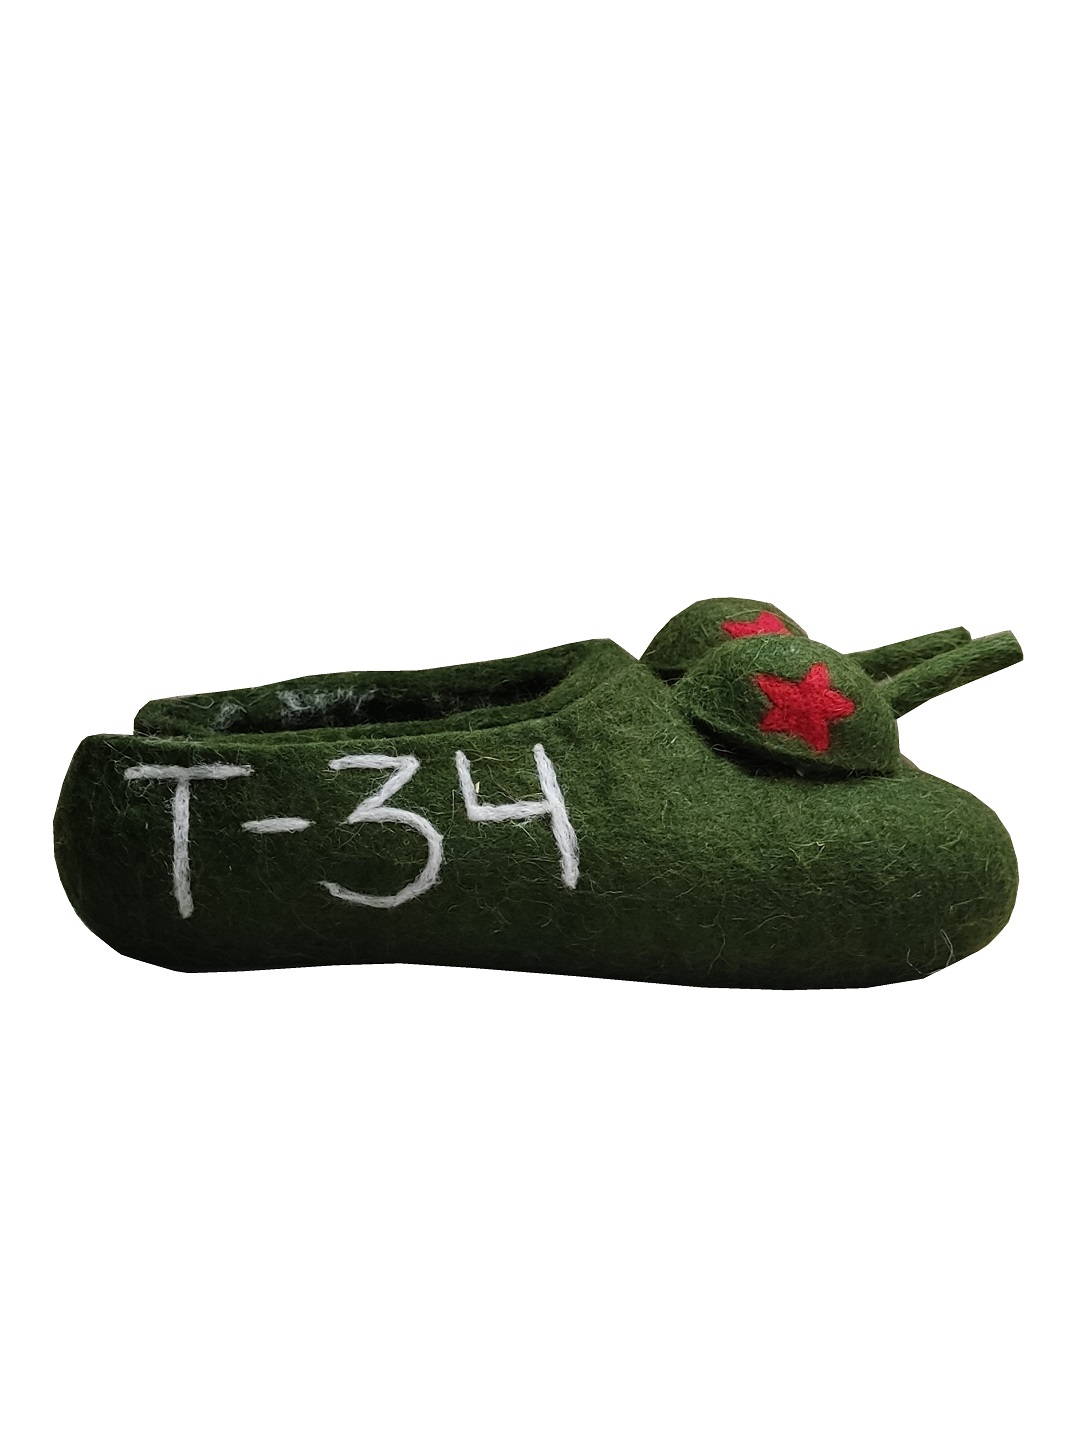 Детские войлочные тапочки "Танк Т-34"